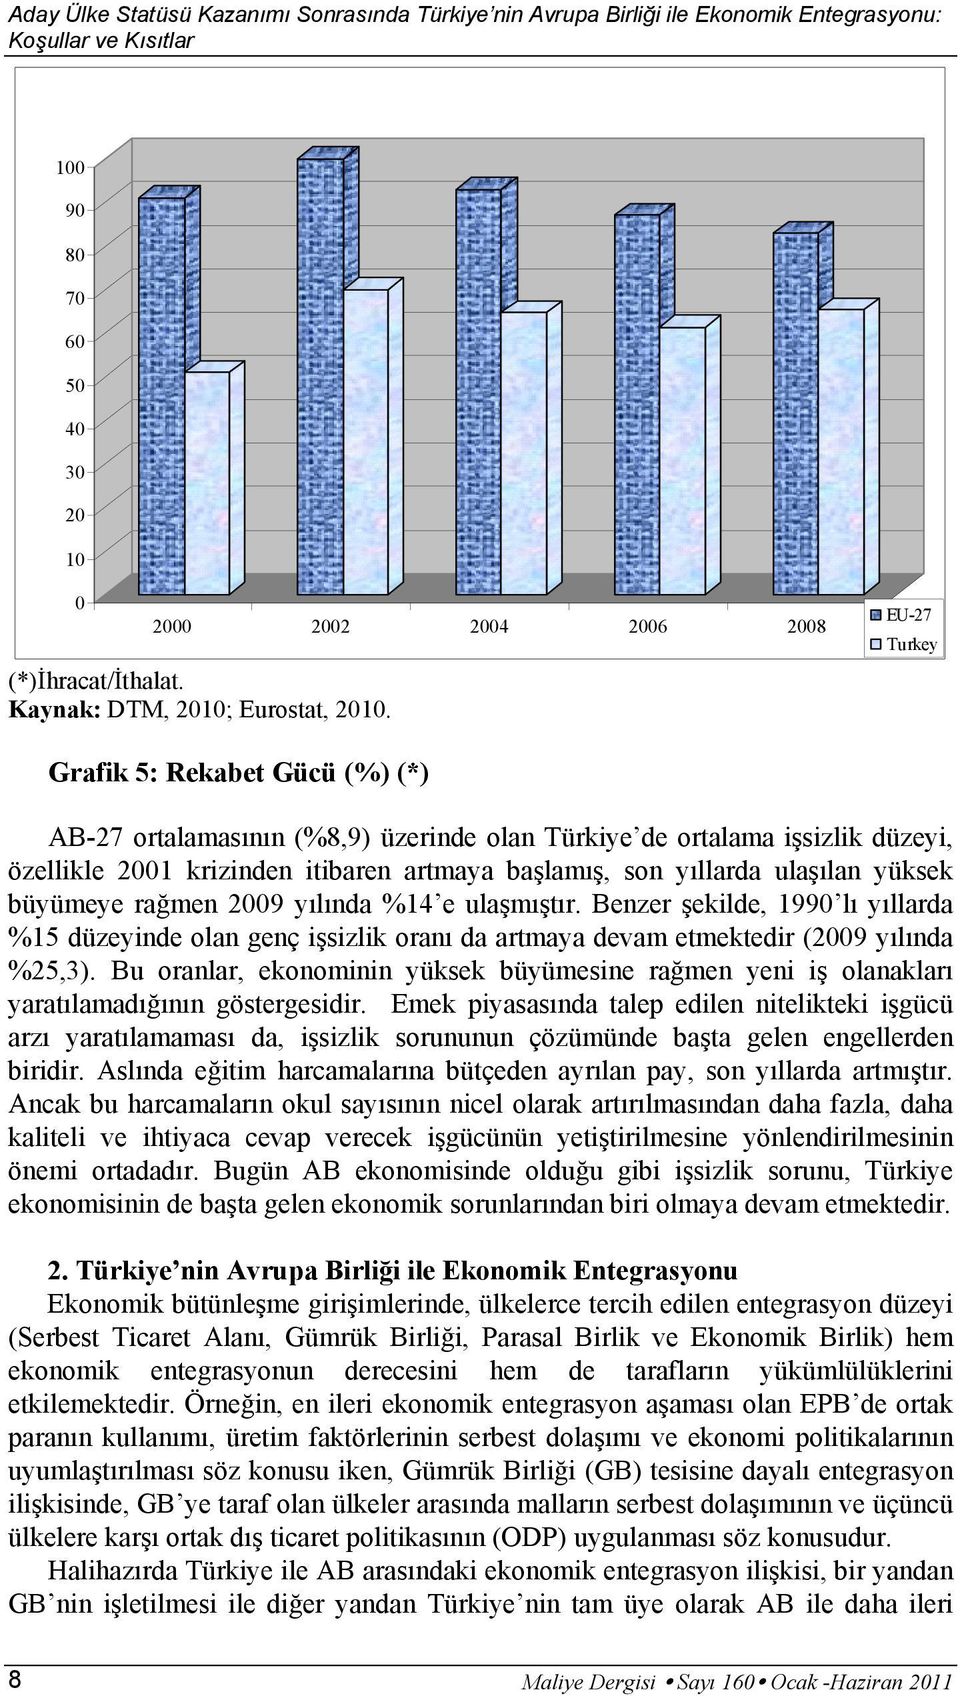 EU-27 Turkey Grafik 5: Rekabet Gücü (%) (*) AB-27 ortalamasının (%8,9) üzerinde olan Türkiye de ortalama işsizlik düzeyi, özellikle 2001 krizinden itibaren artmaya başlamış, son yıllarda ulaşılan